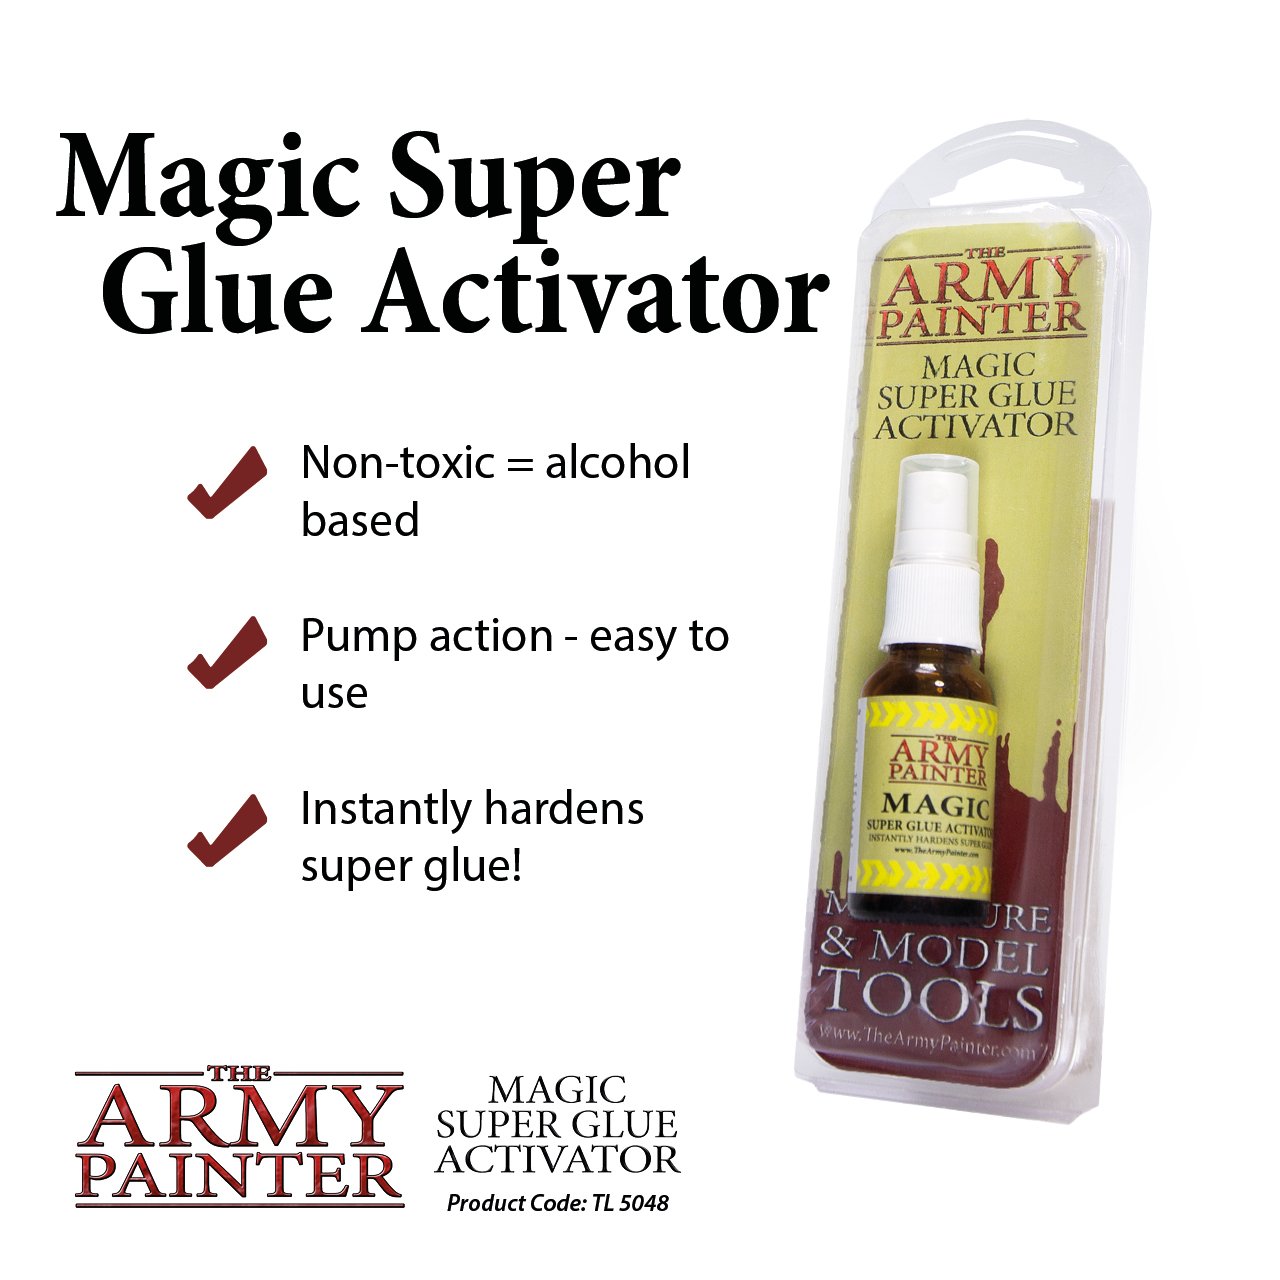 Magic Super Glue Activator - Linebreakers